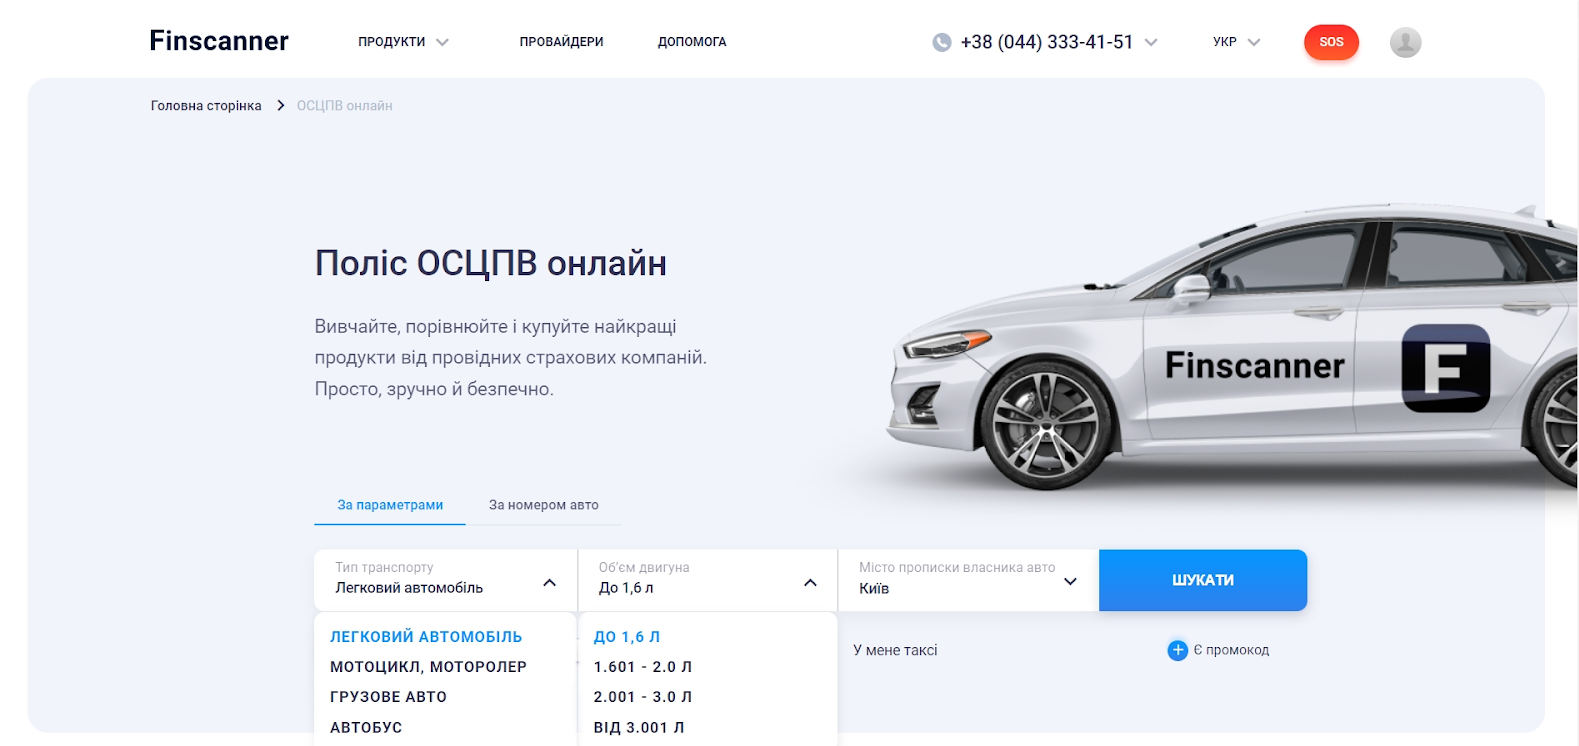 Як розраховується вартість страховки на авто в Україні?